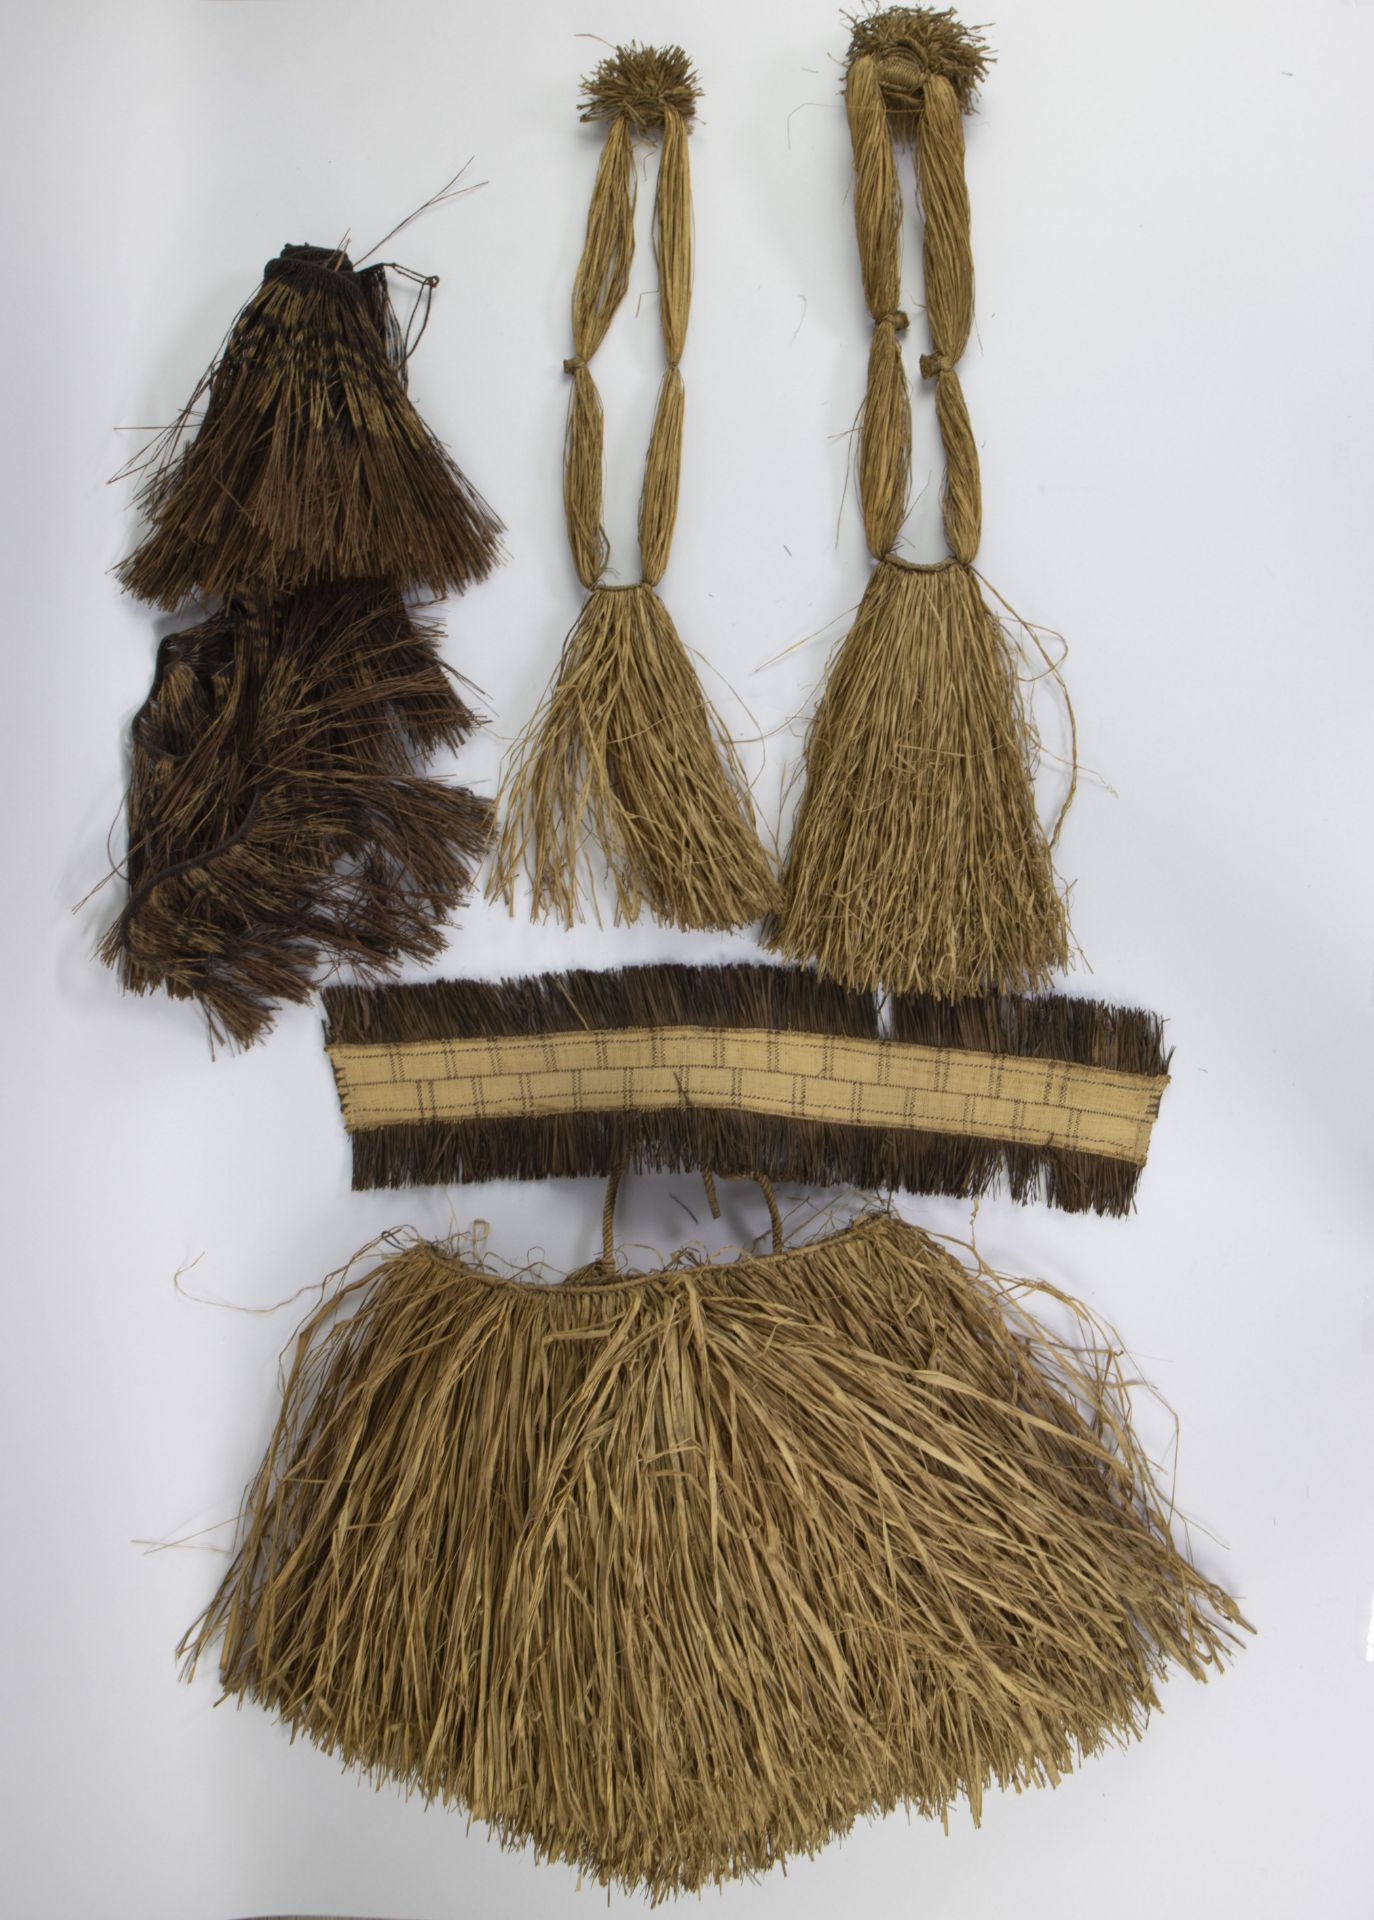 Native costume and ceremonial attire in raphia